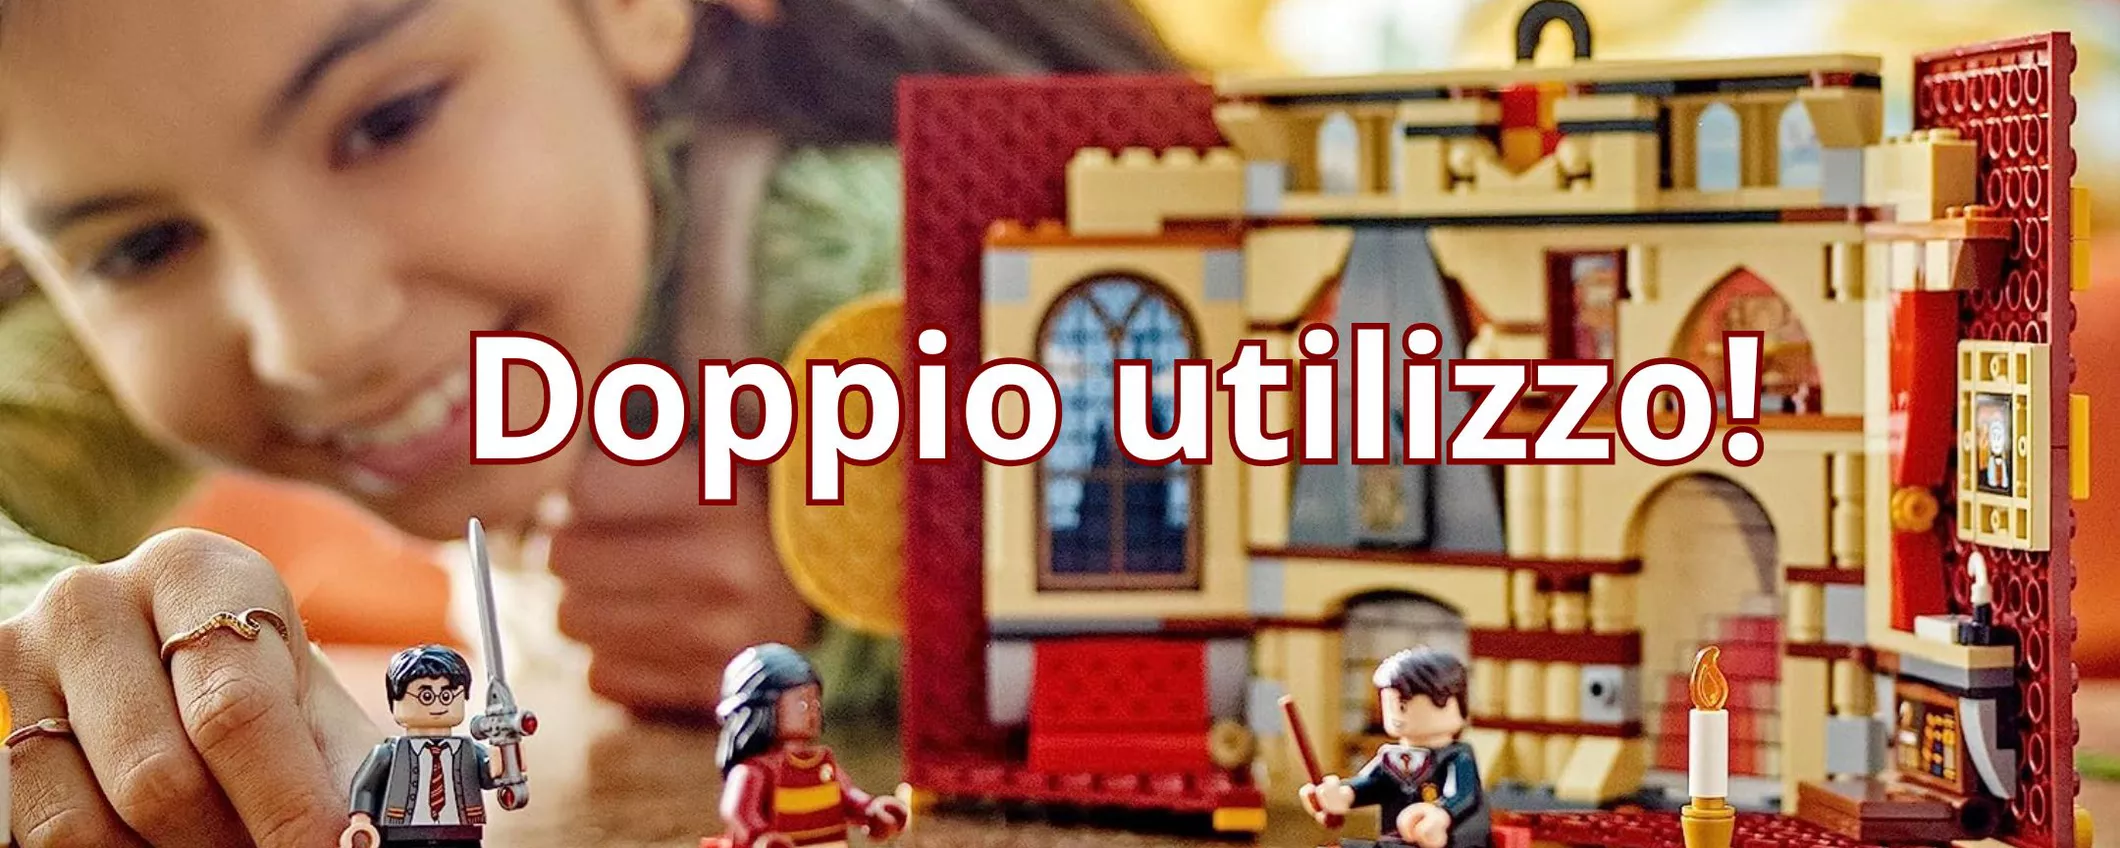 Costruisci il mitico Stendardo della Casa Grifondoro in LEGO a soli 27 euro: contiene la Sala comune!